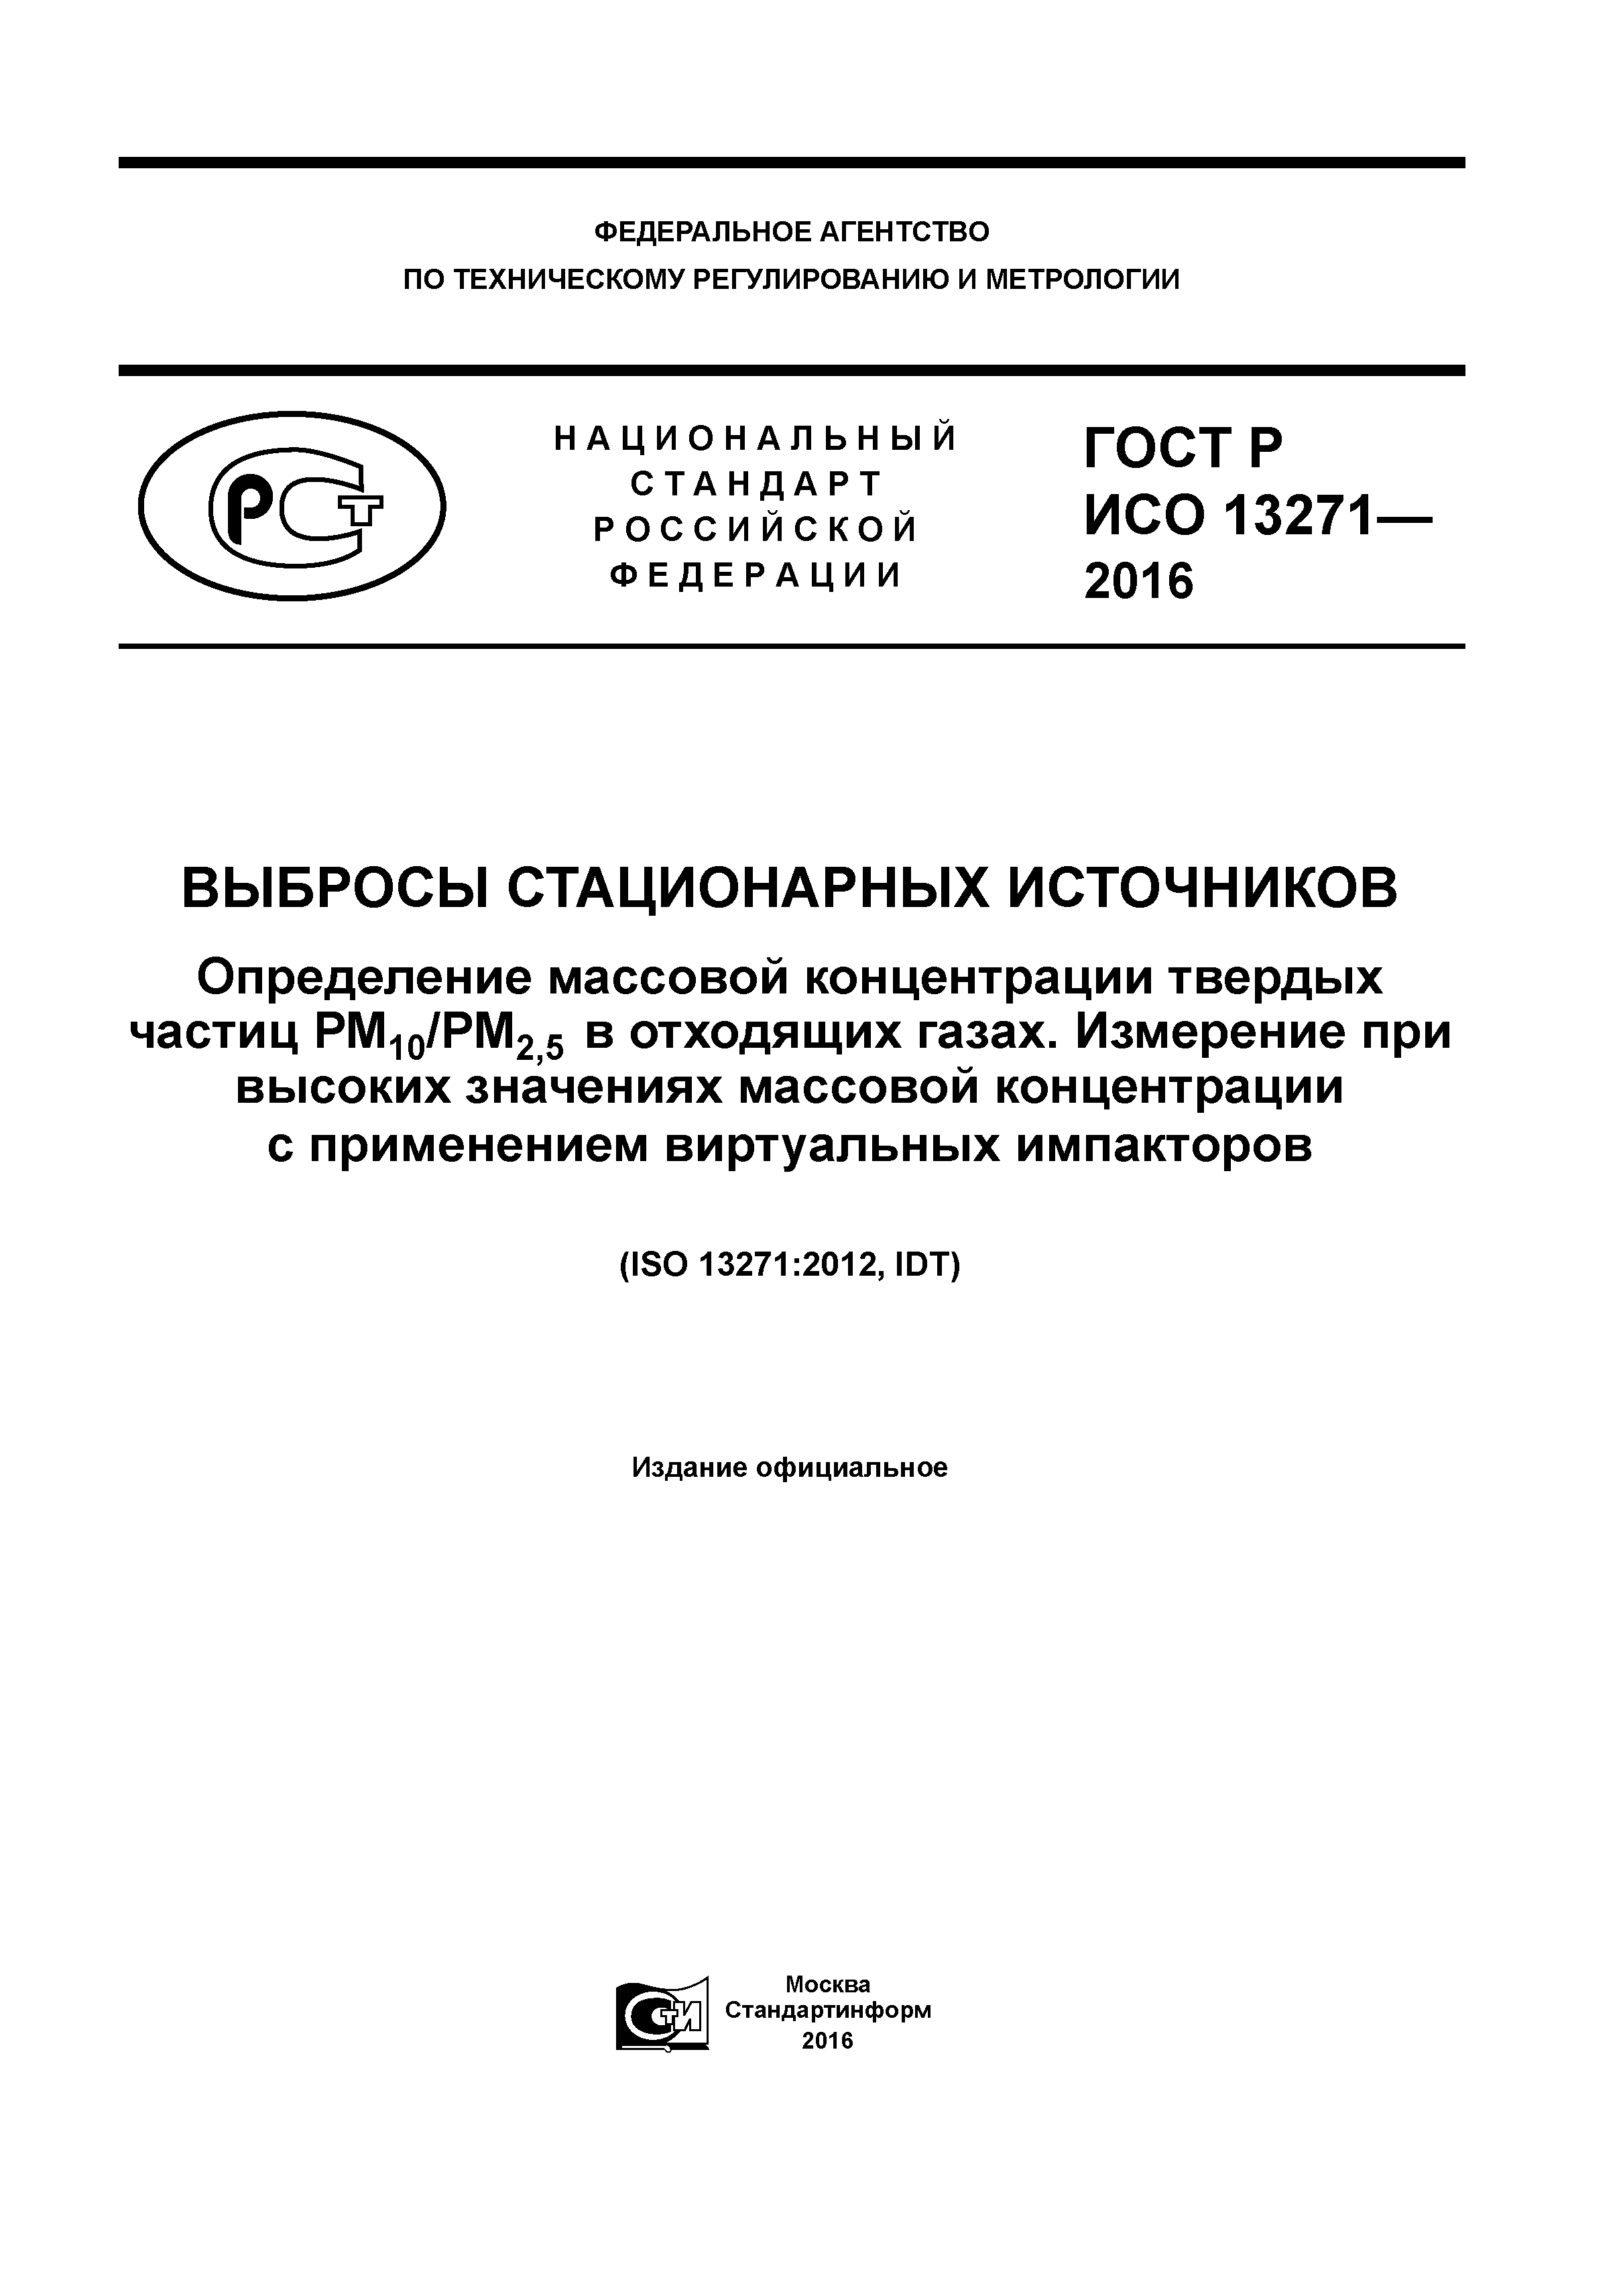 ГОСТ Р ИСО 13271-2016